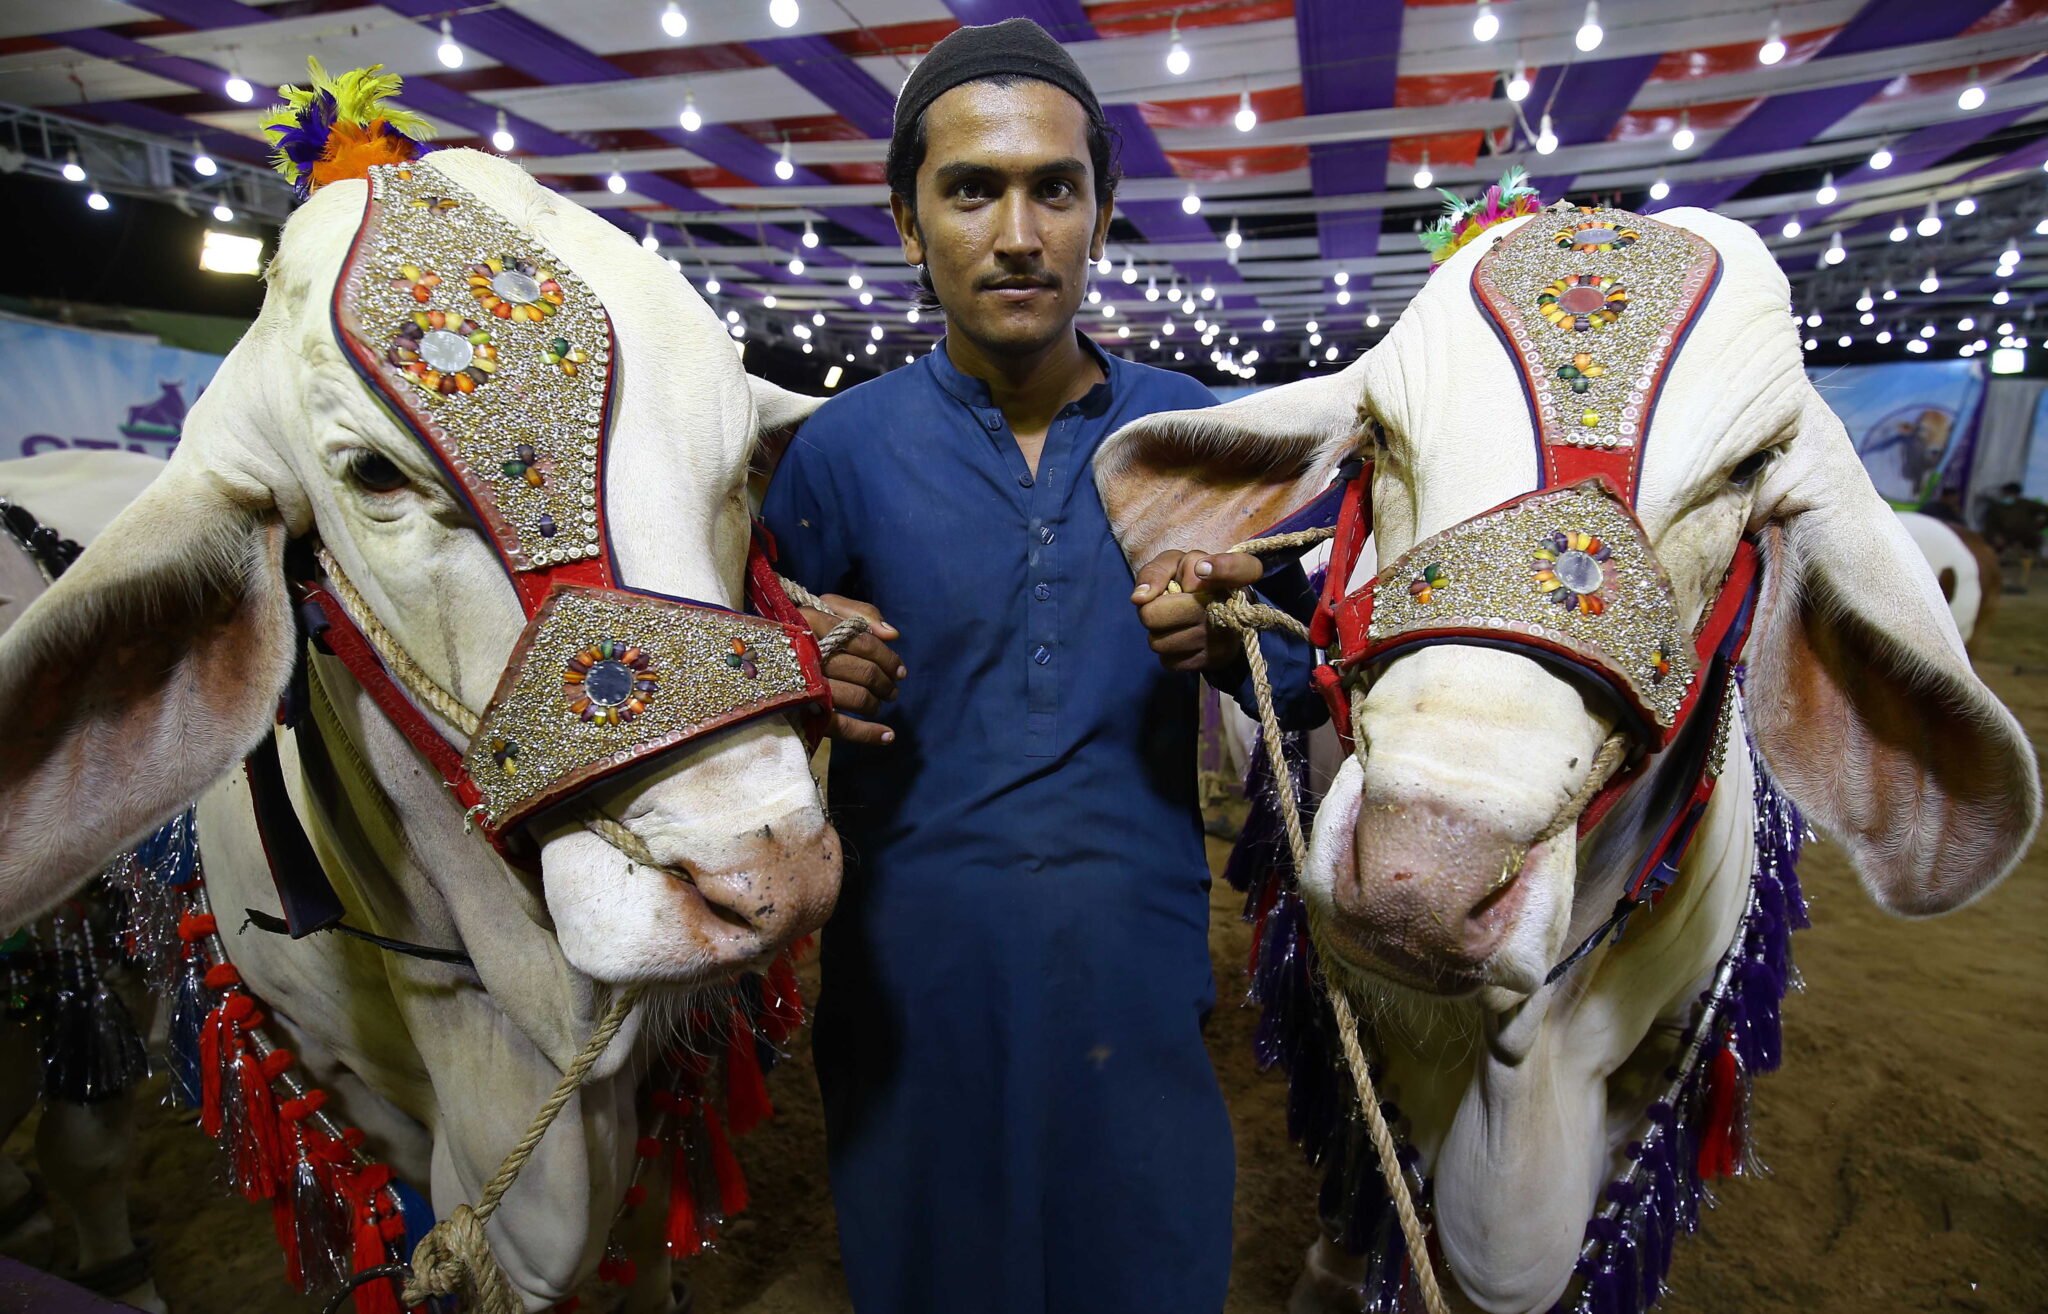 Poświęcone zwierzęta podczas muzułmańskiego festiwalu Eid al-Adha w Pakistanie. fot. EPA/SHAHZAIB AKBER 